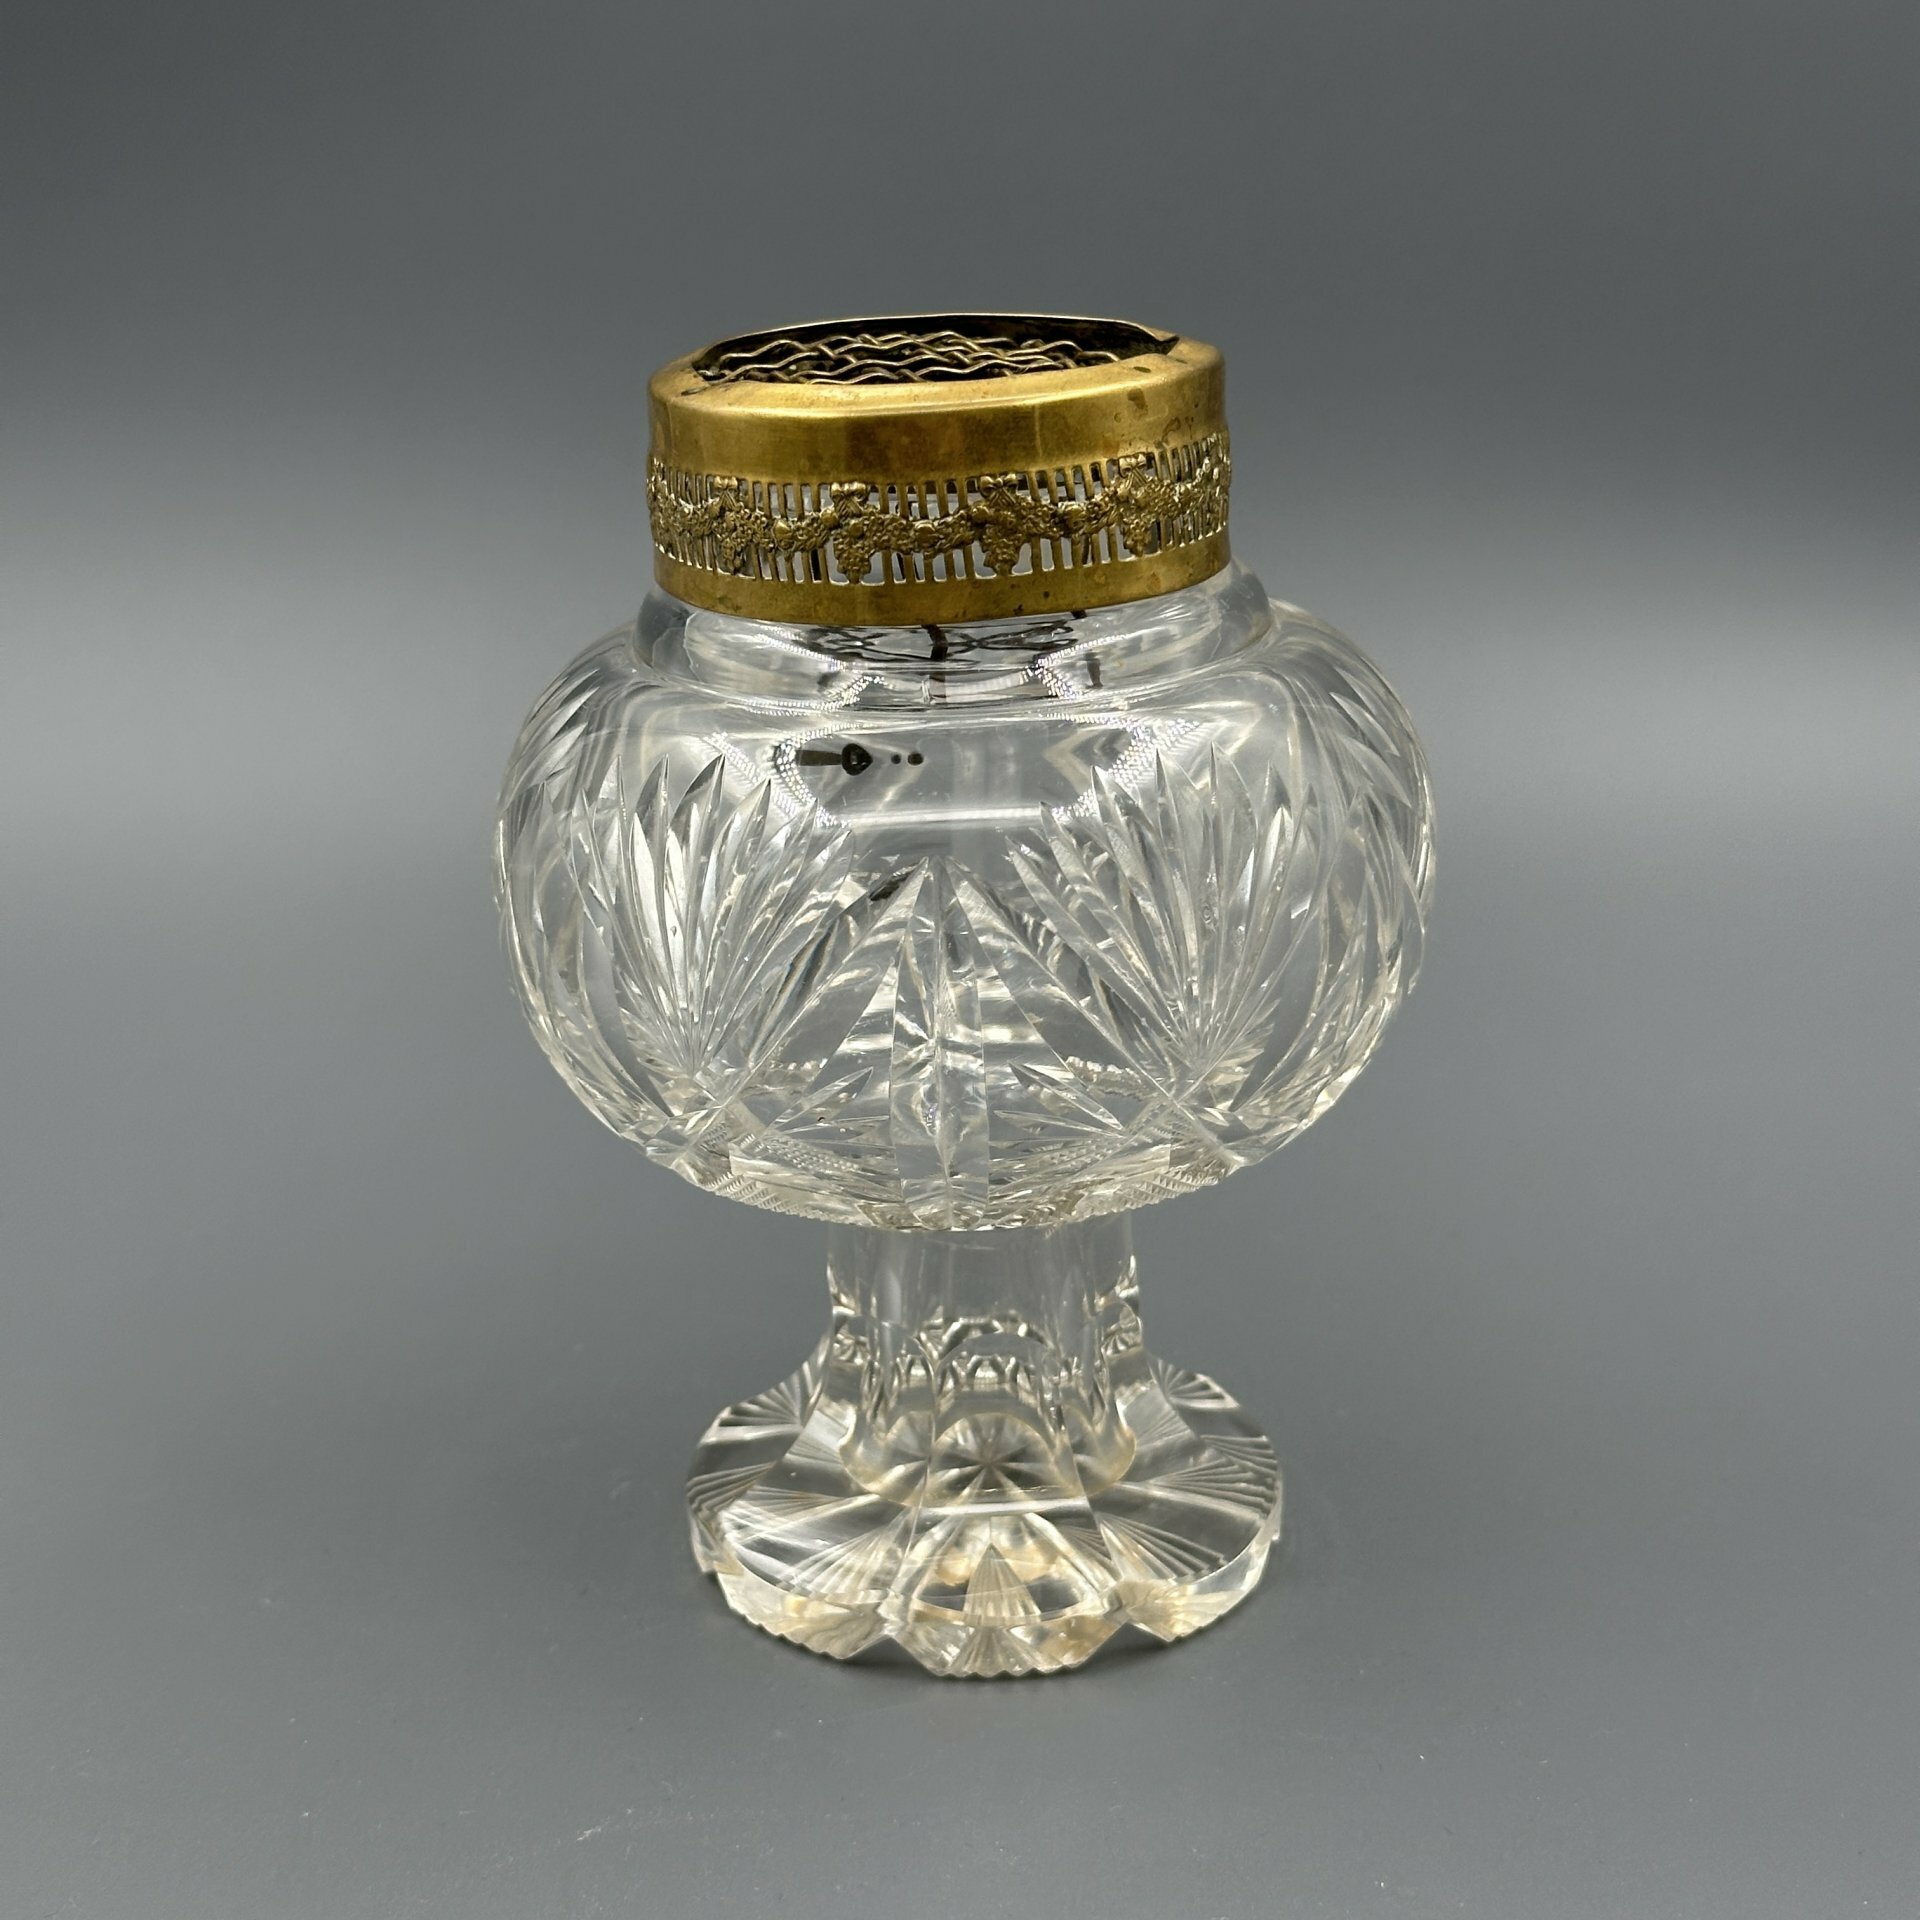 Ваза роуз-боул (rose-bowl) стекло алмазная грань металл золочение Европа 1910-1940 гг.